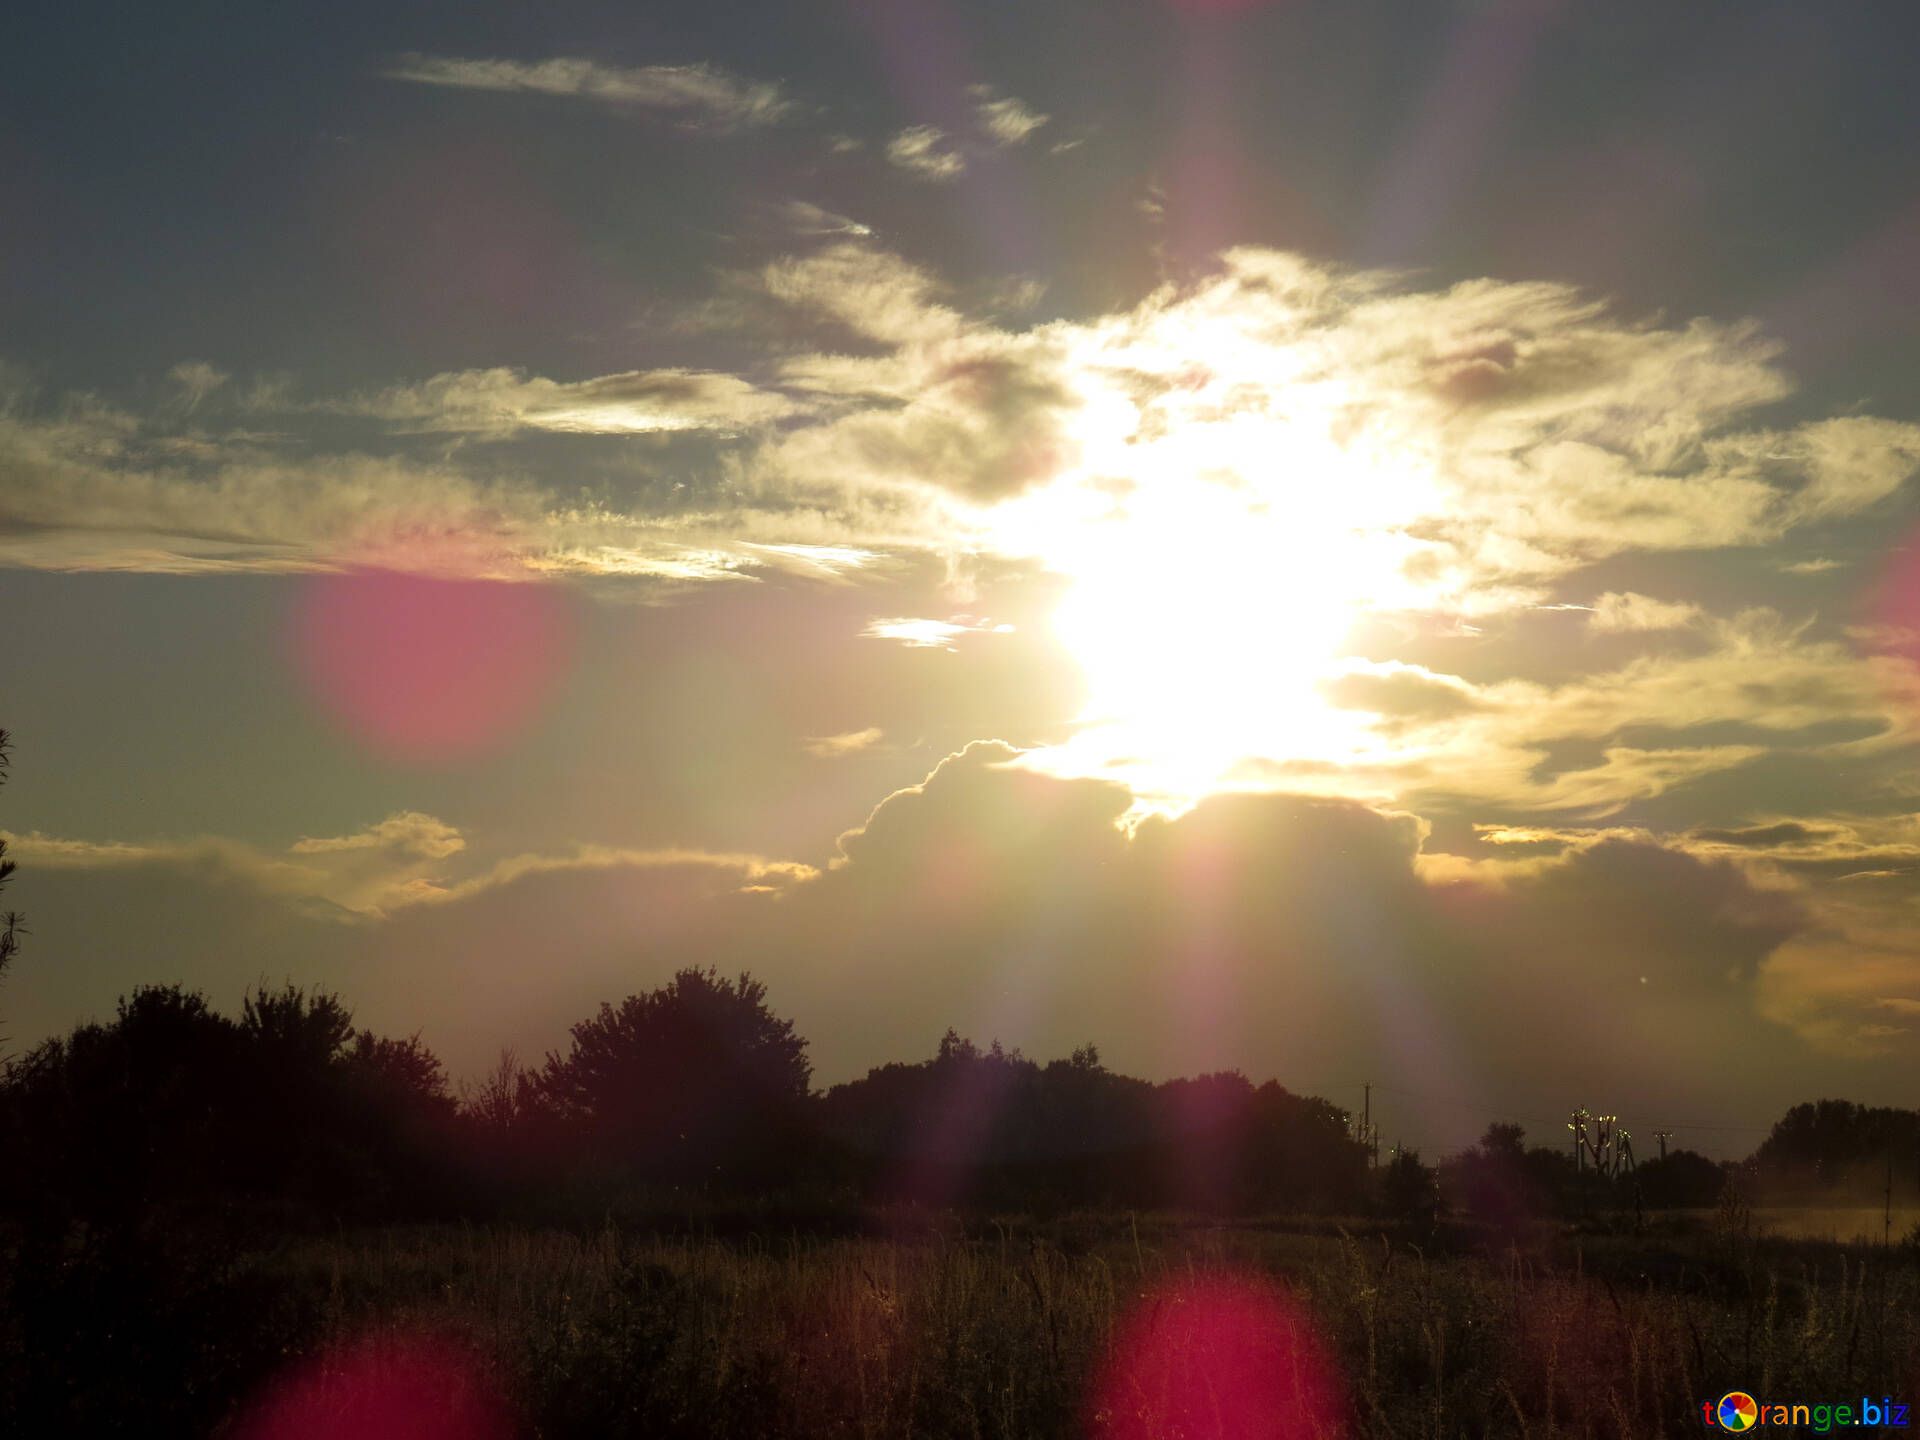  Sonnenuntergang Hintergrundbild 1920x1440. Hintergrund für den desktop bild sonnenuntergang hintergrundbilder für desktop bilder sonnenuntergang № 36723